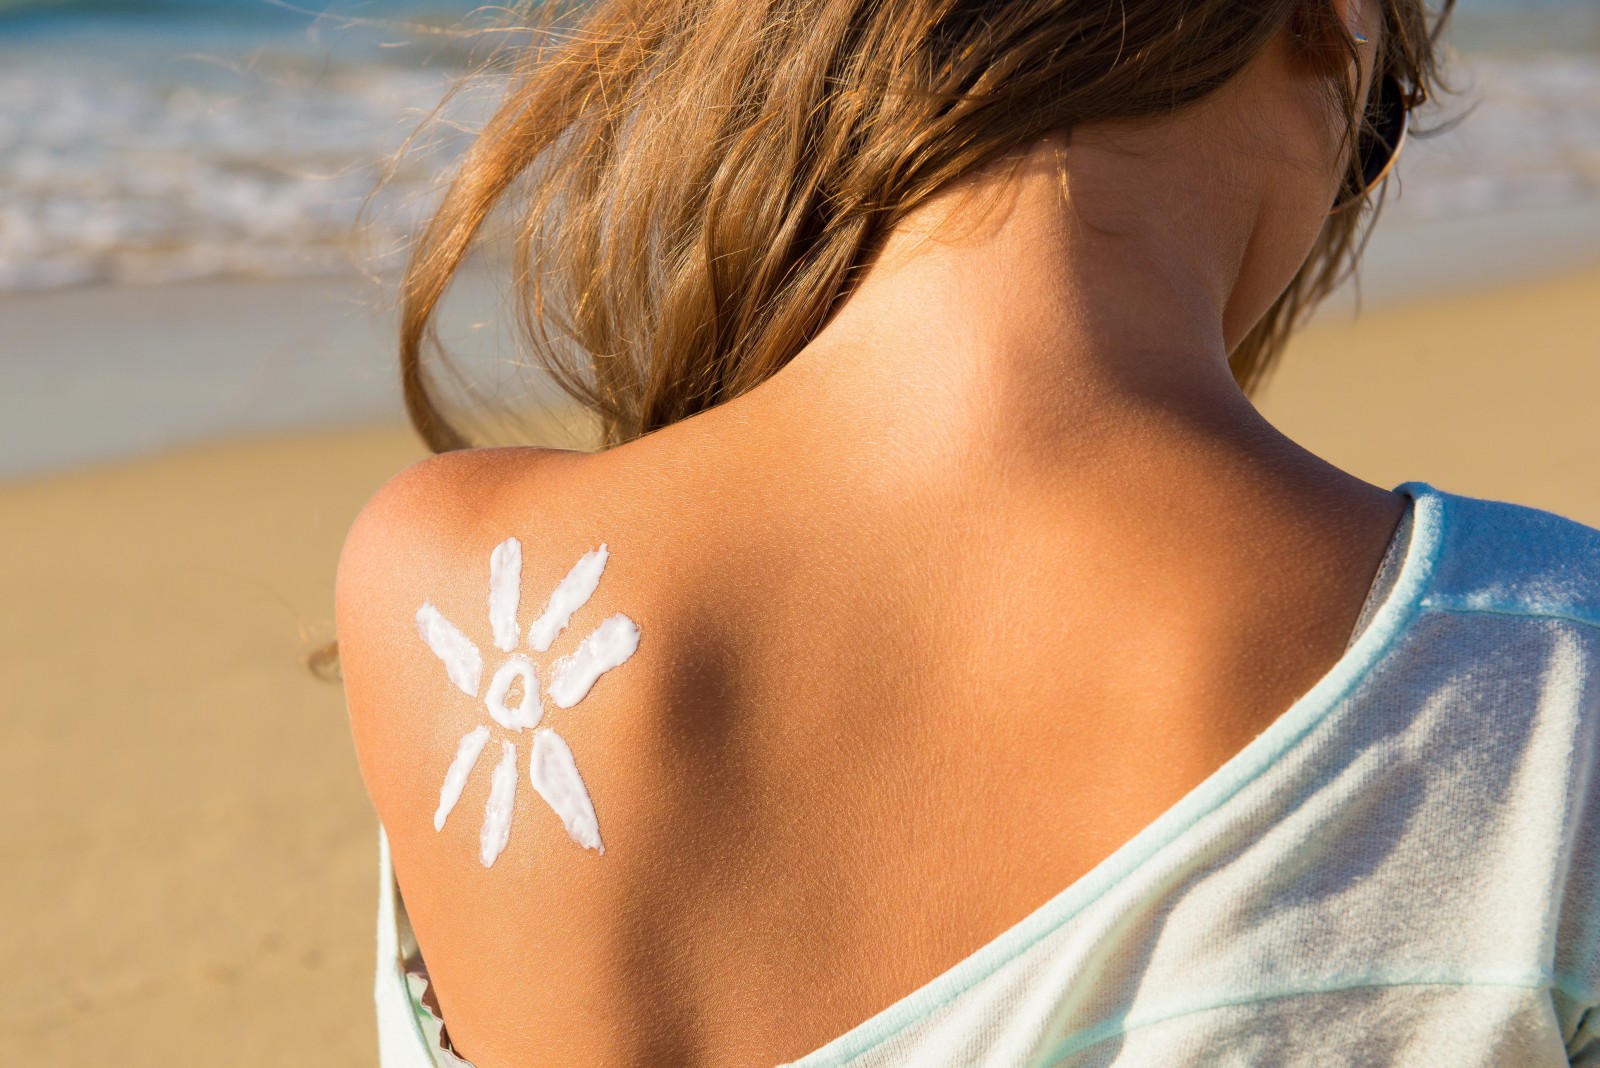 Imagen: Proteger tu piel del sol|fotorejuvenecimiento|Mujer protegiéndose del sol